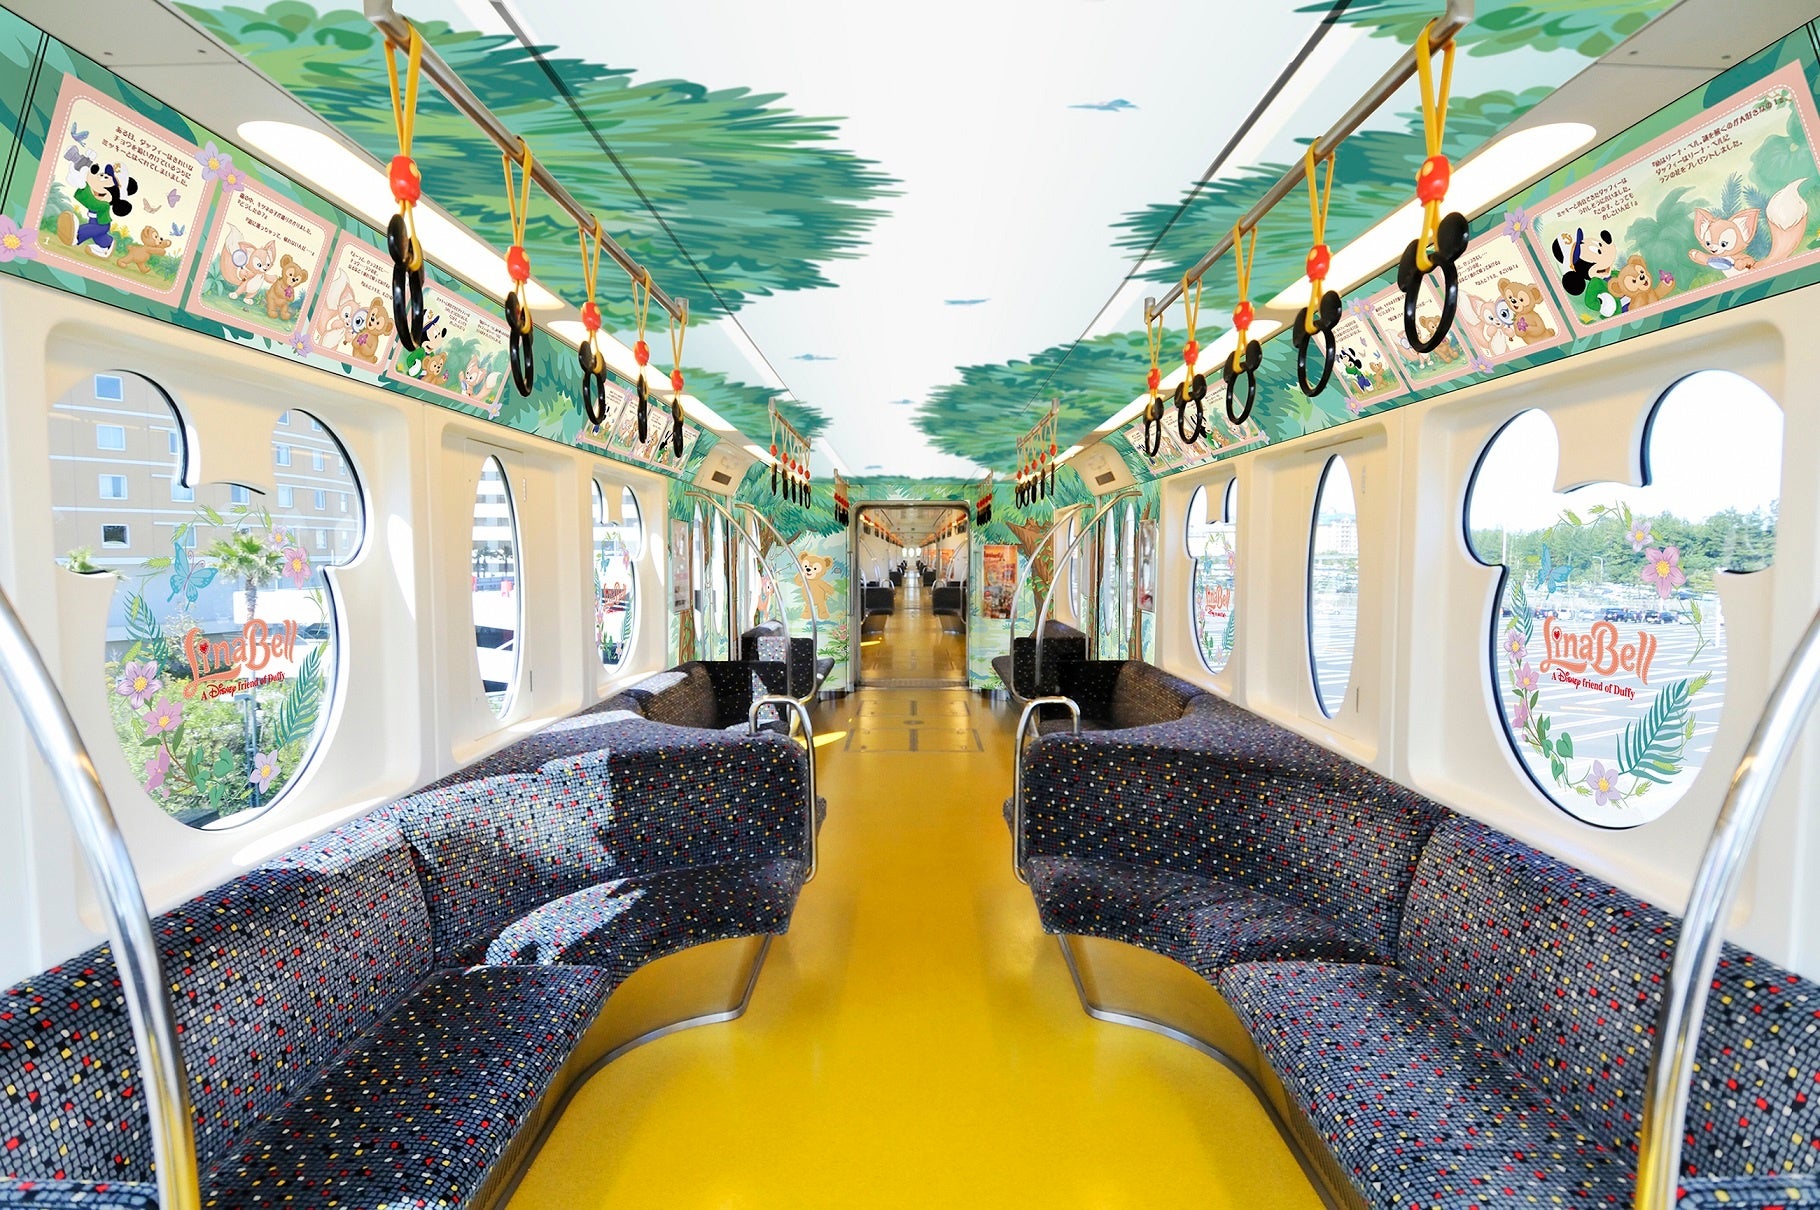 東京ディズニーシー®に新しく登場するダッフィーのお友だち“リーナ・ベル”のデザインを装飾したモノレールが期間限定で運行！